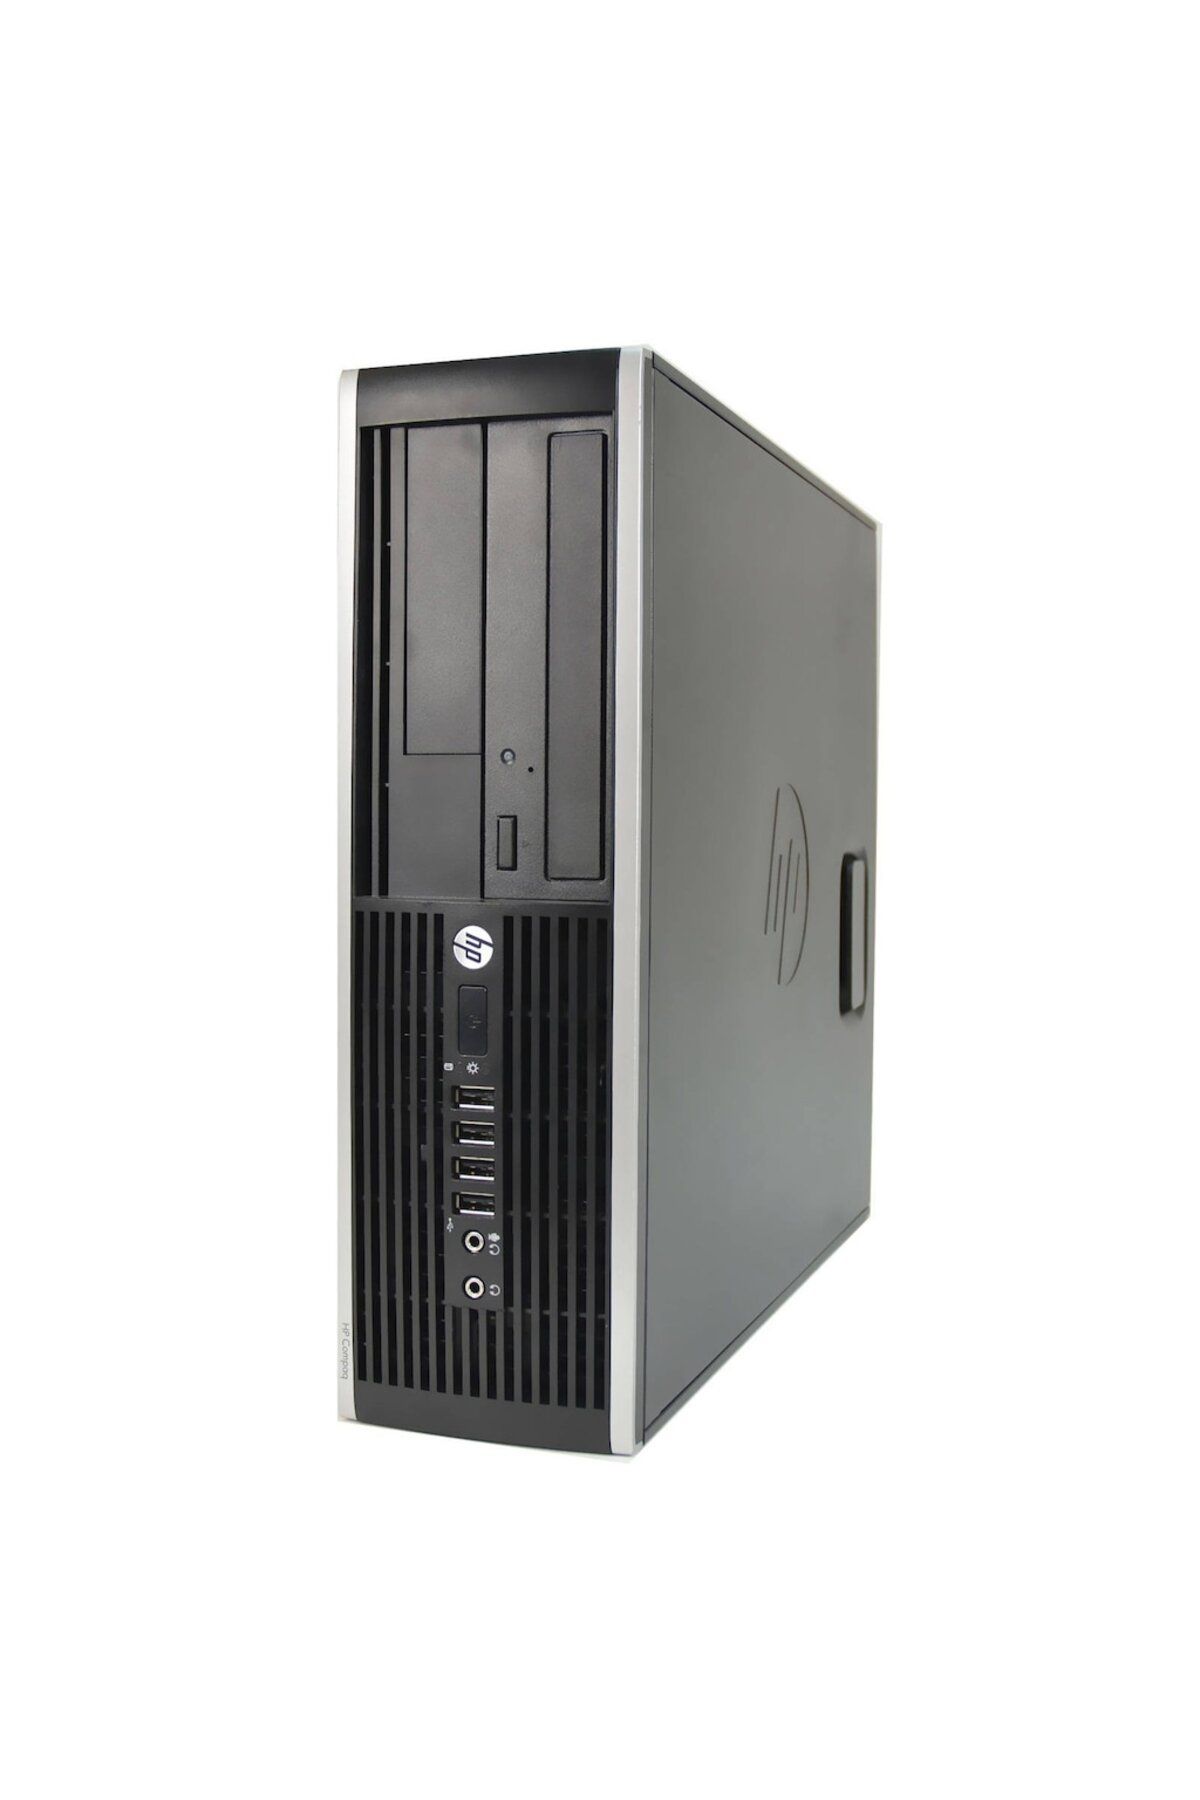 HP Compaq 8300 Elite I5-3470 16gb 128gb Ssd W7p Kurumsal Yenilenmiş Pc